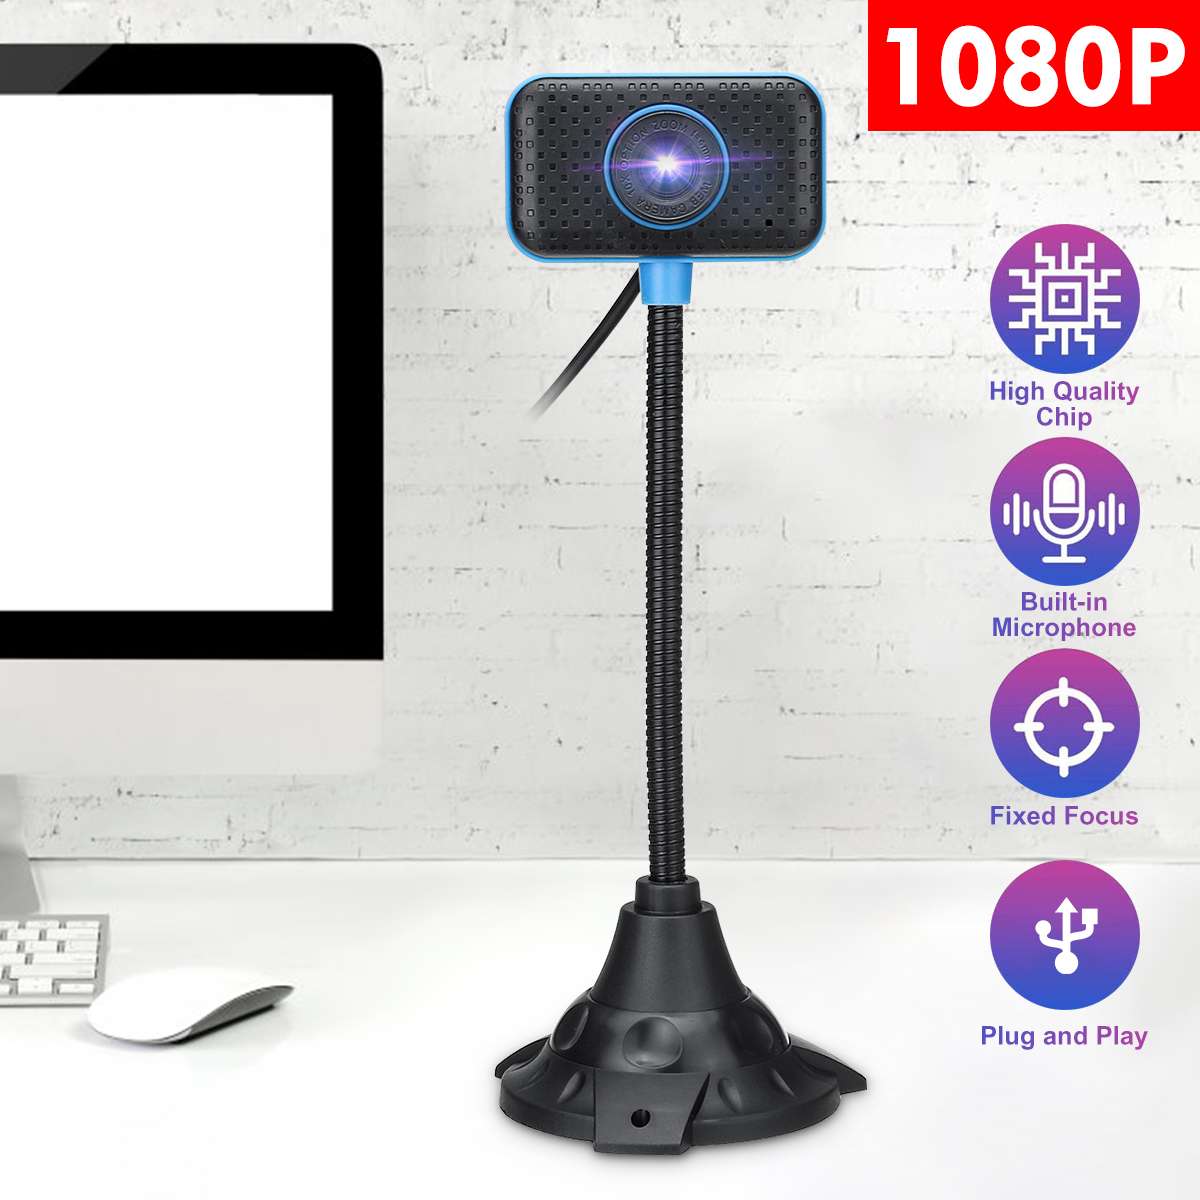 Hd 1080P Usb Webcam Webcamera Webcam Met Microfoon Flexibele Rotatie Voor Pc Computer Desktop Laptop